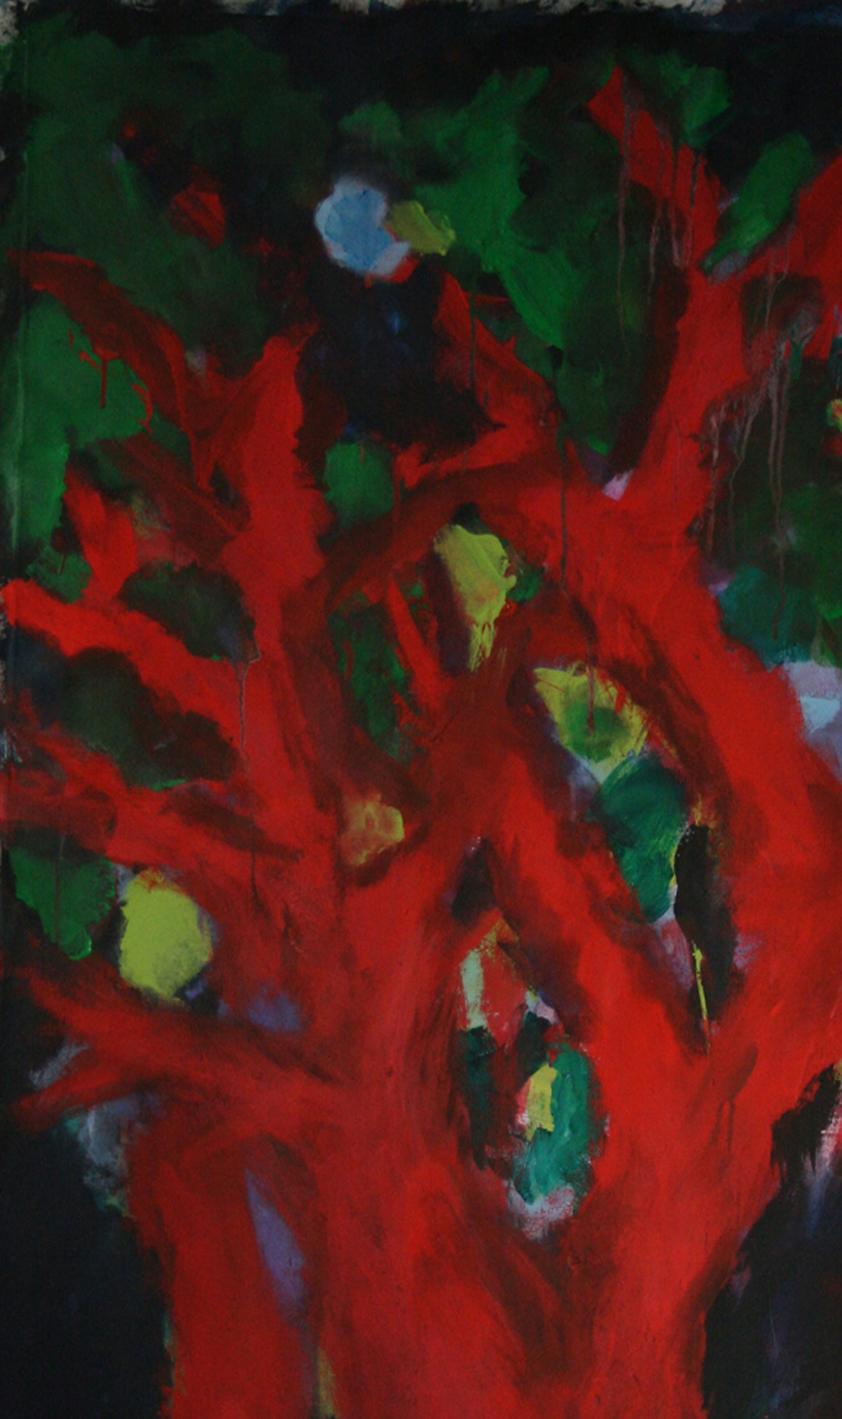 Peinture d'artiste française « Arbre » de Nathalie Fontenoy, 7 arbres sur toile - Expressionnisme abstrait Painting par Nathalie Fontenoy 